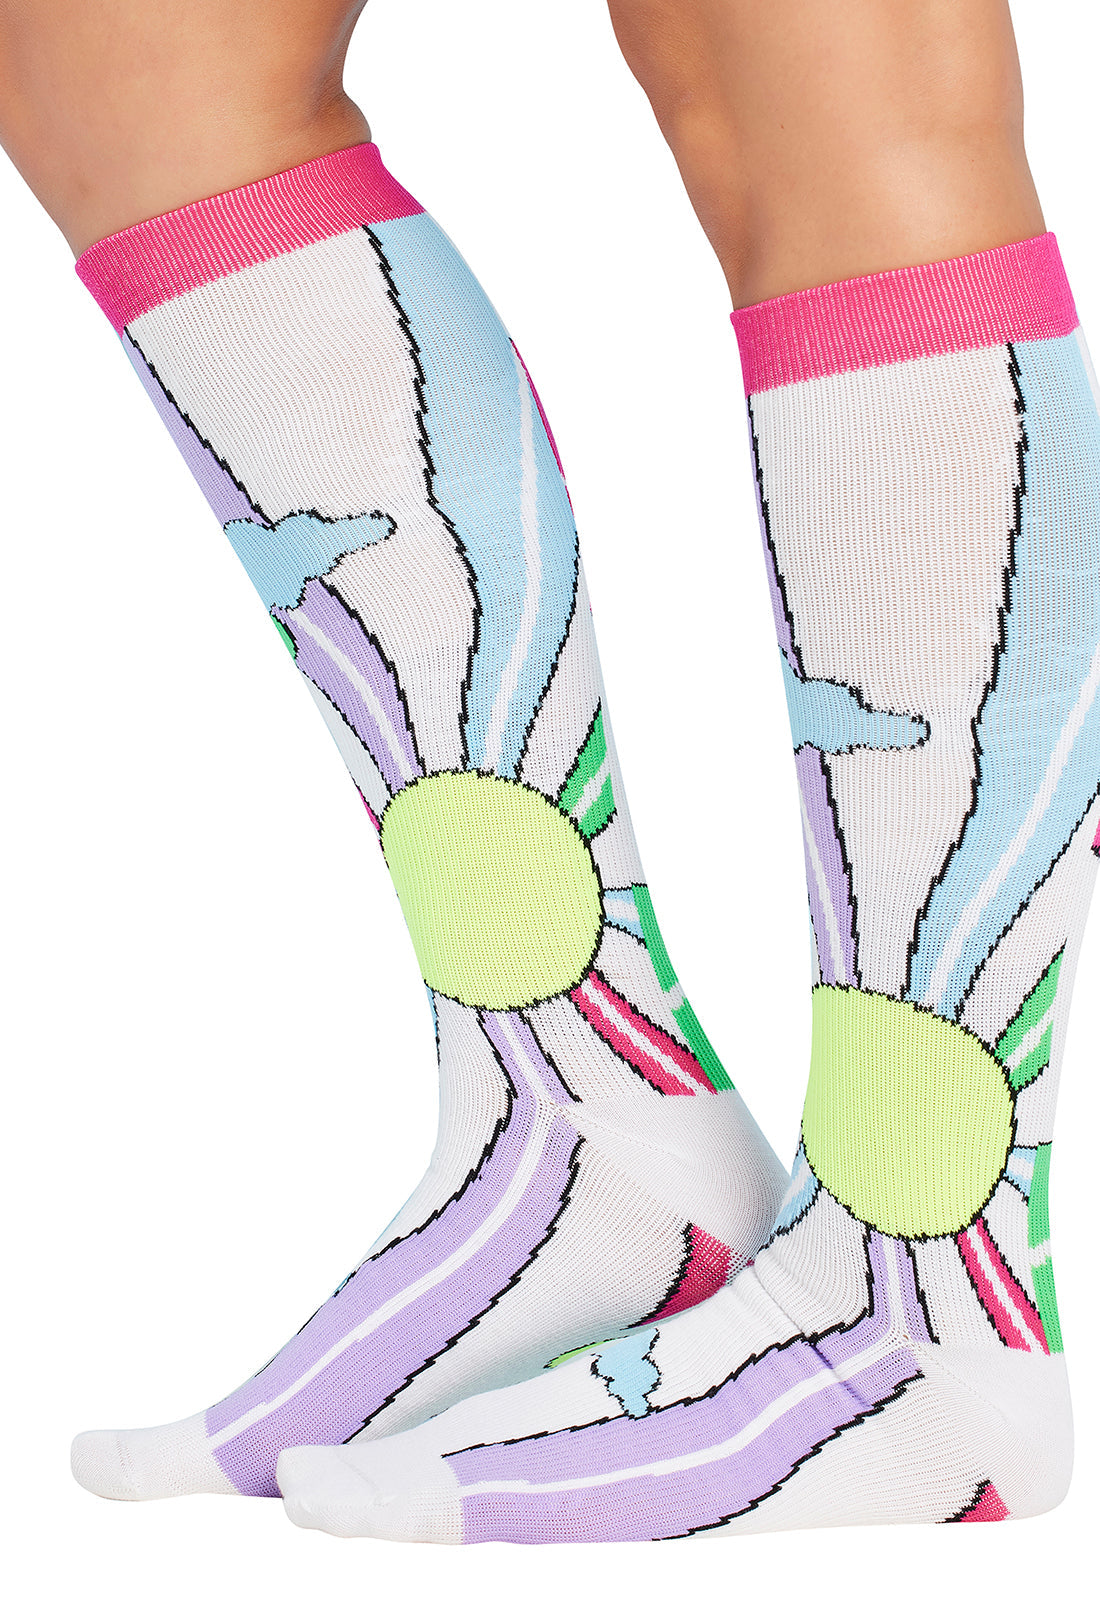 Regular Fit - Compression Socks 10-15mmHg Compression Socks Cherokee Legwear   